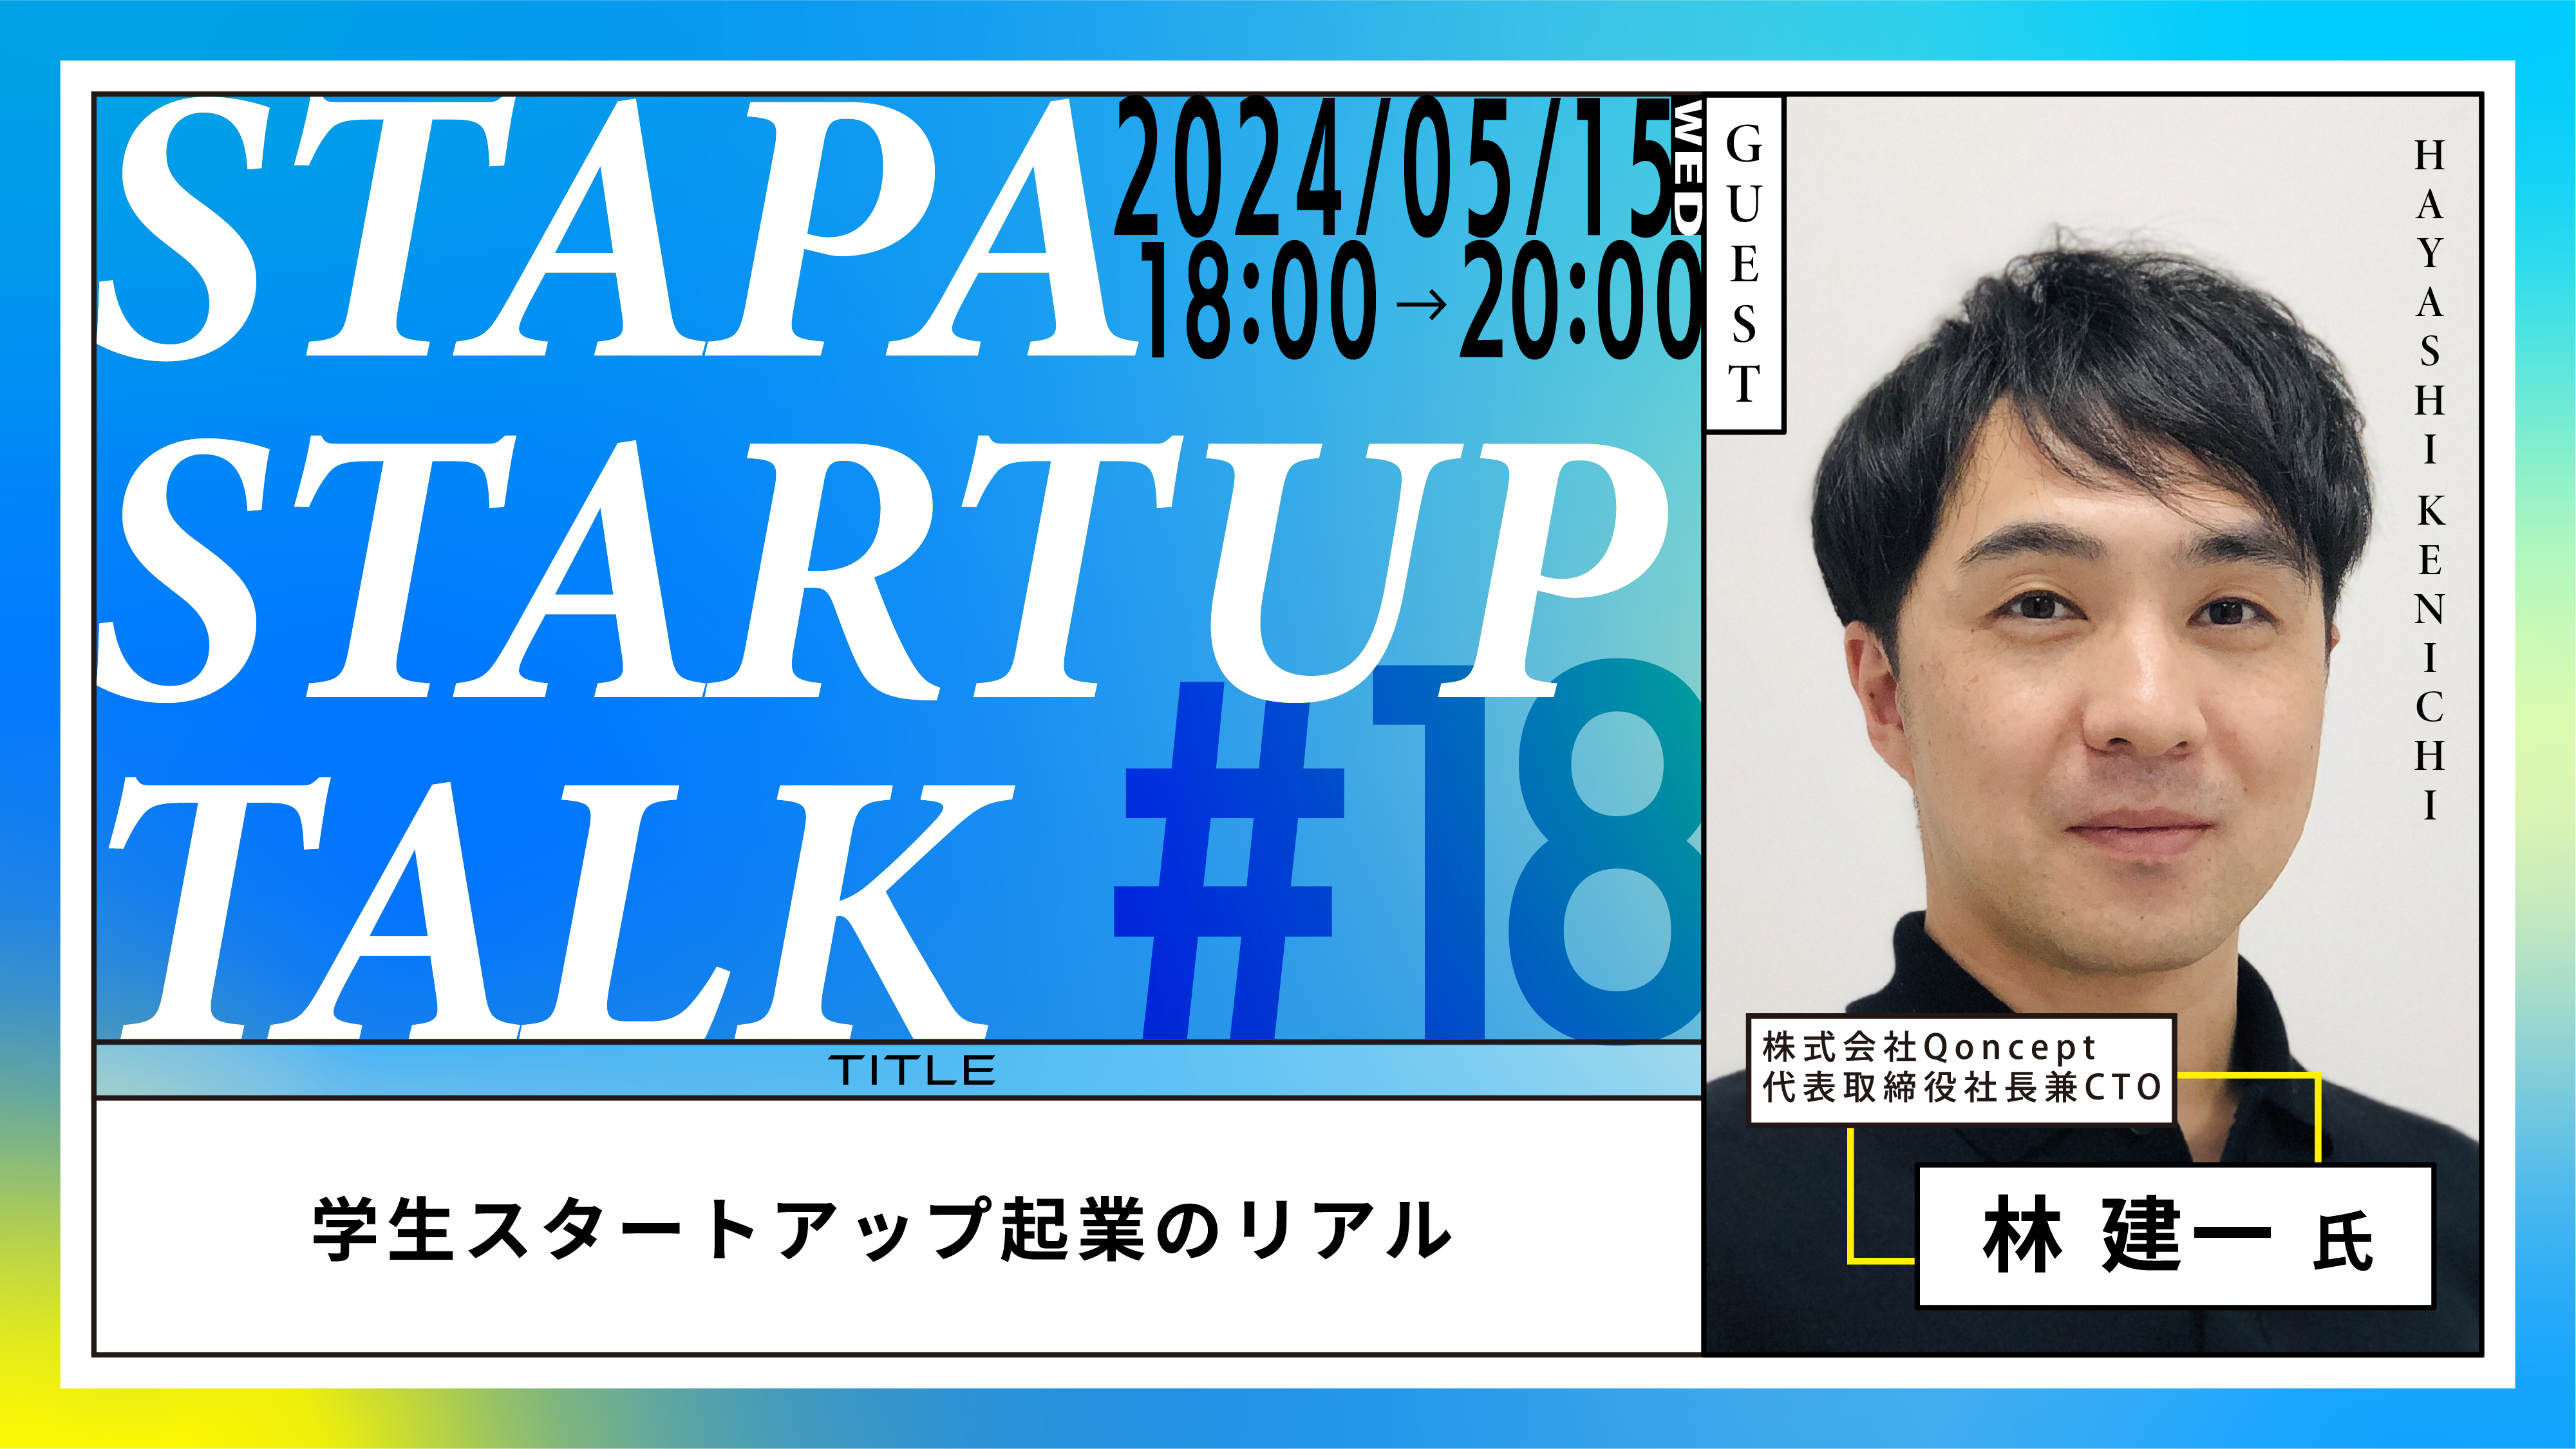 STAPA STARTUP TALK #18 －学生スタートアップ起業のリアル－